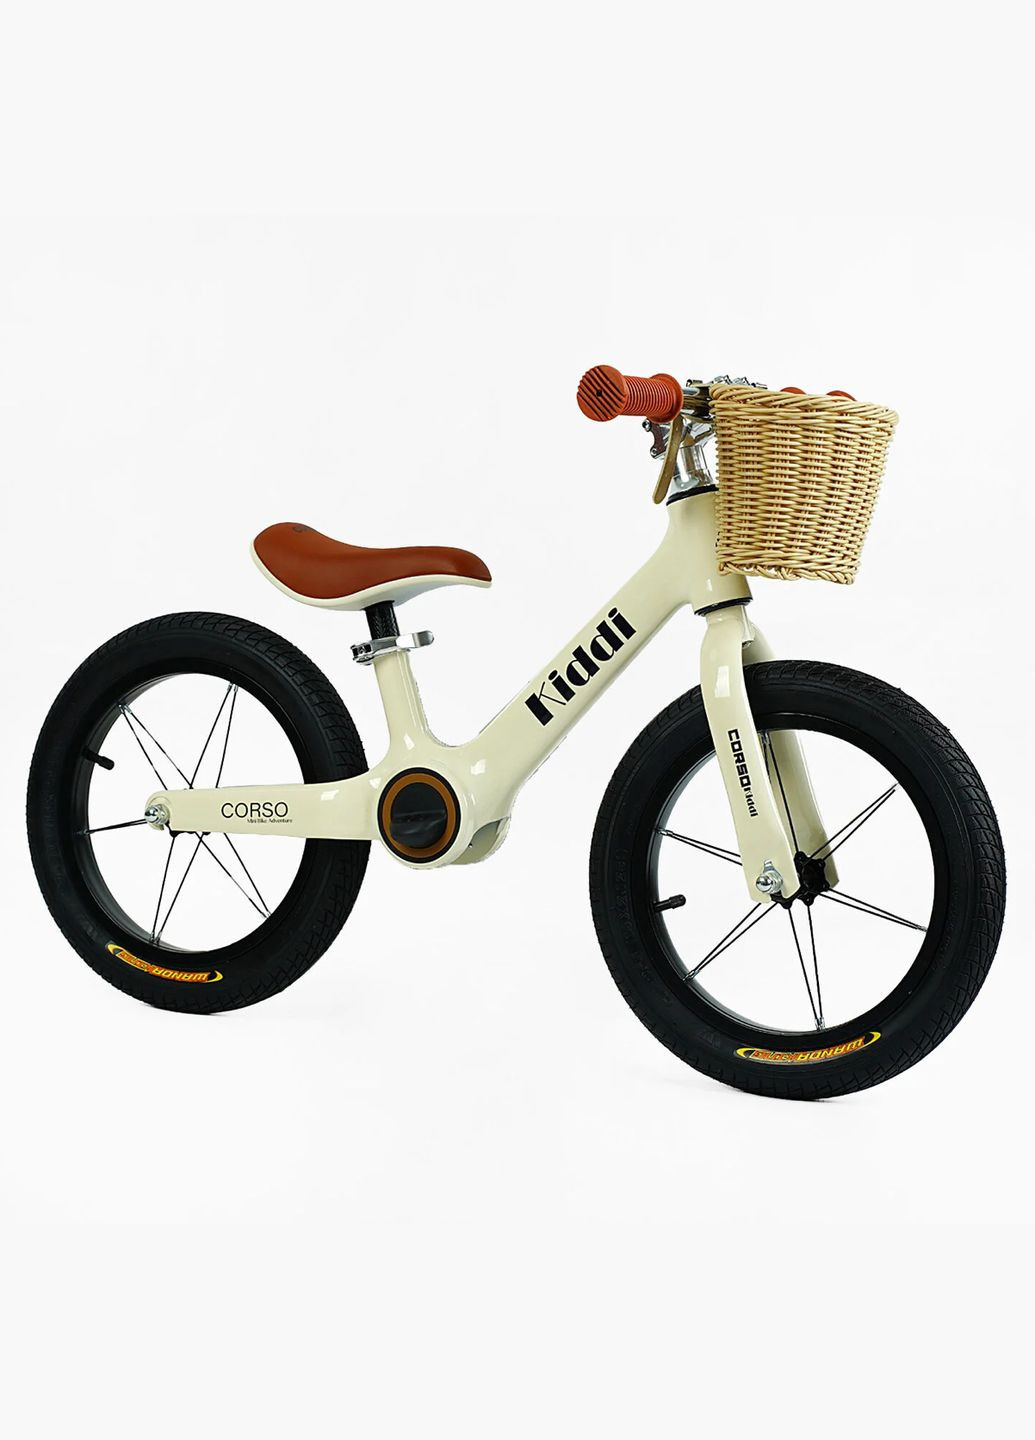 Дитячий велобіг KIDDI LT-14104. Магнієва рама, надувні колеса 14", підставка для ніг, кошик Corso (290668378)